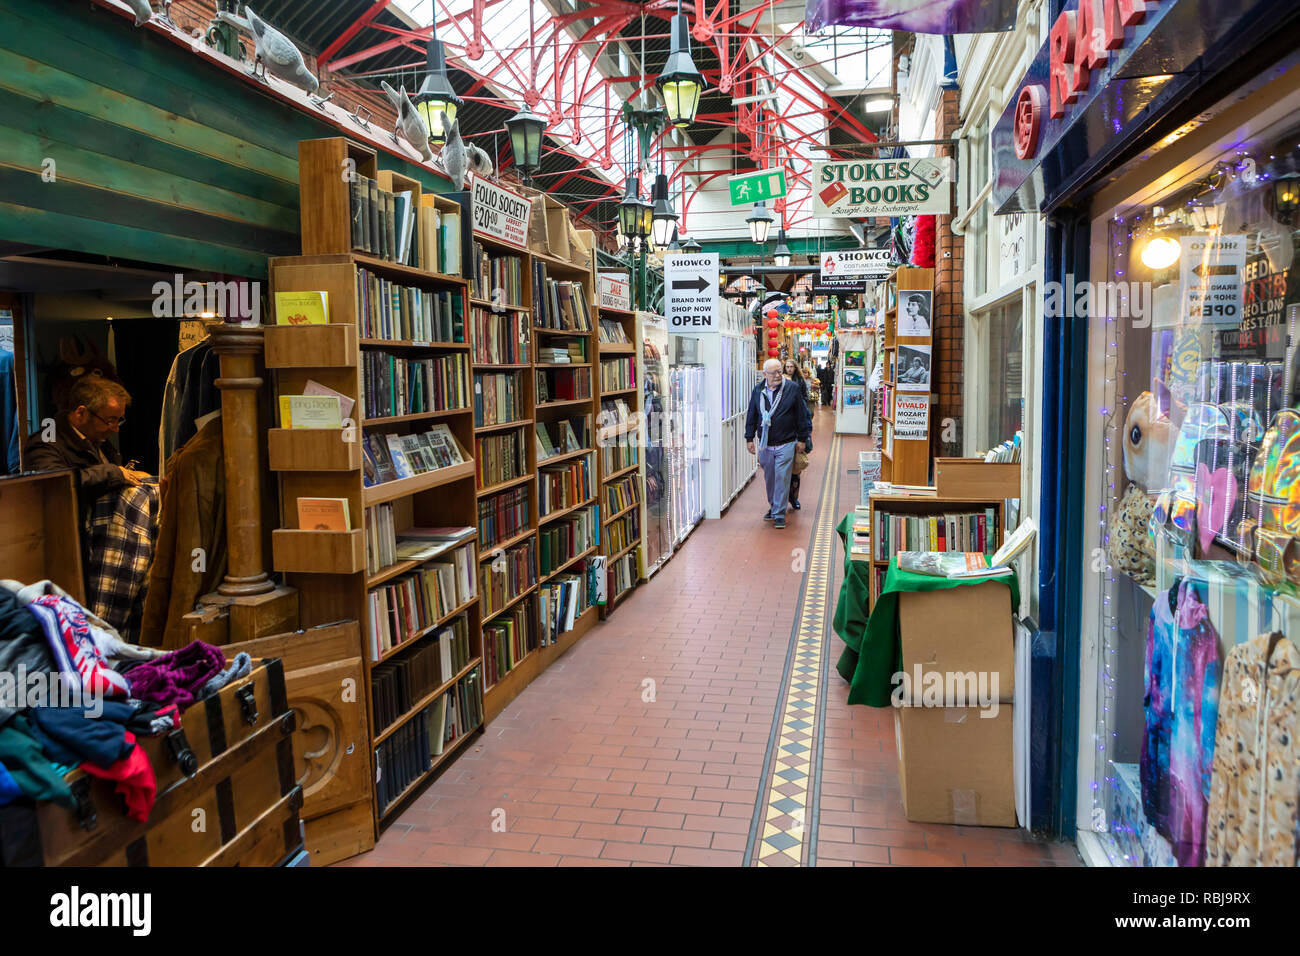 Piccolo shoppes all'interno di George's Street Arcade su South Great George Street a Dublino, Irlanda. Foto Stock